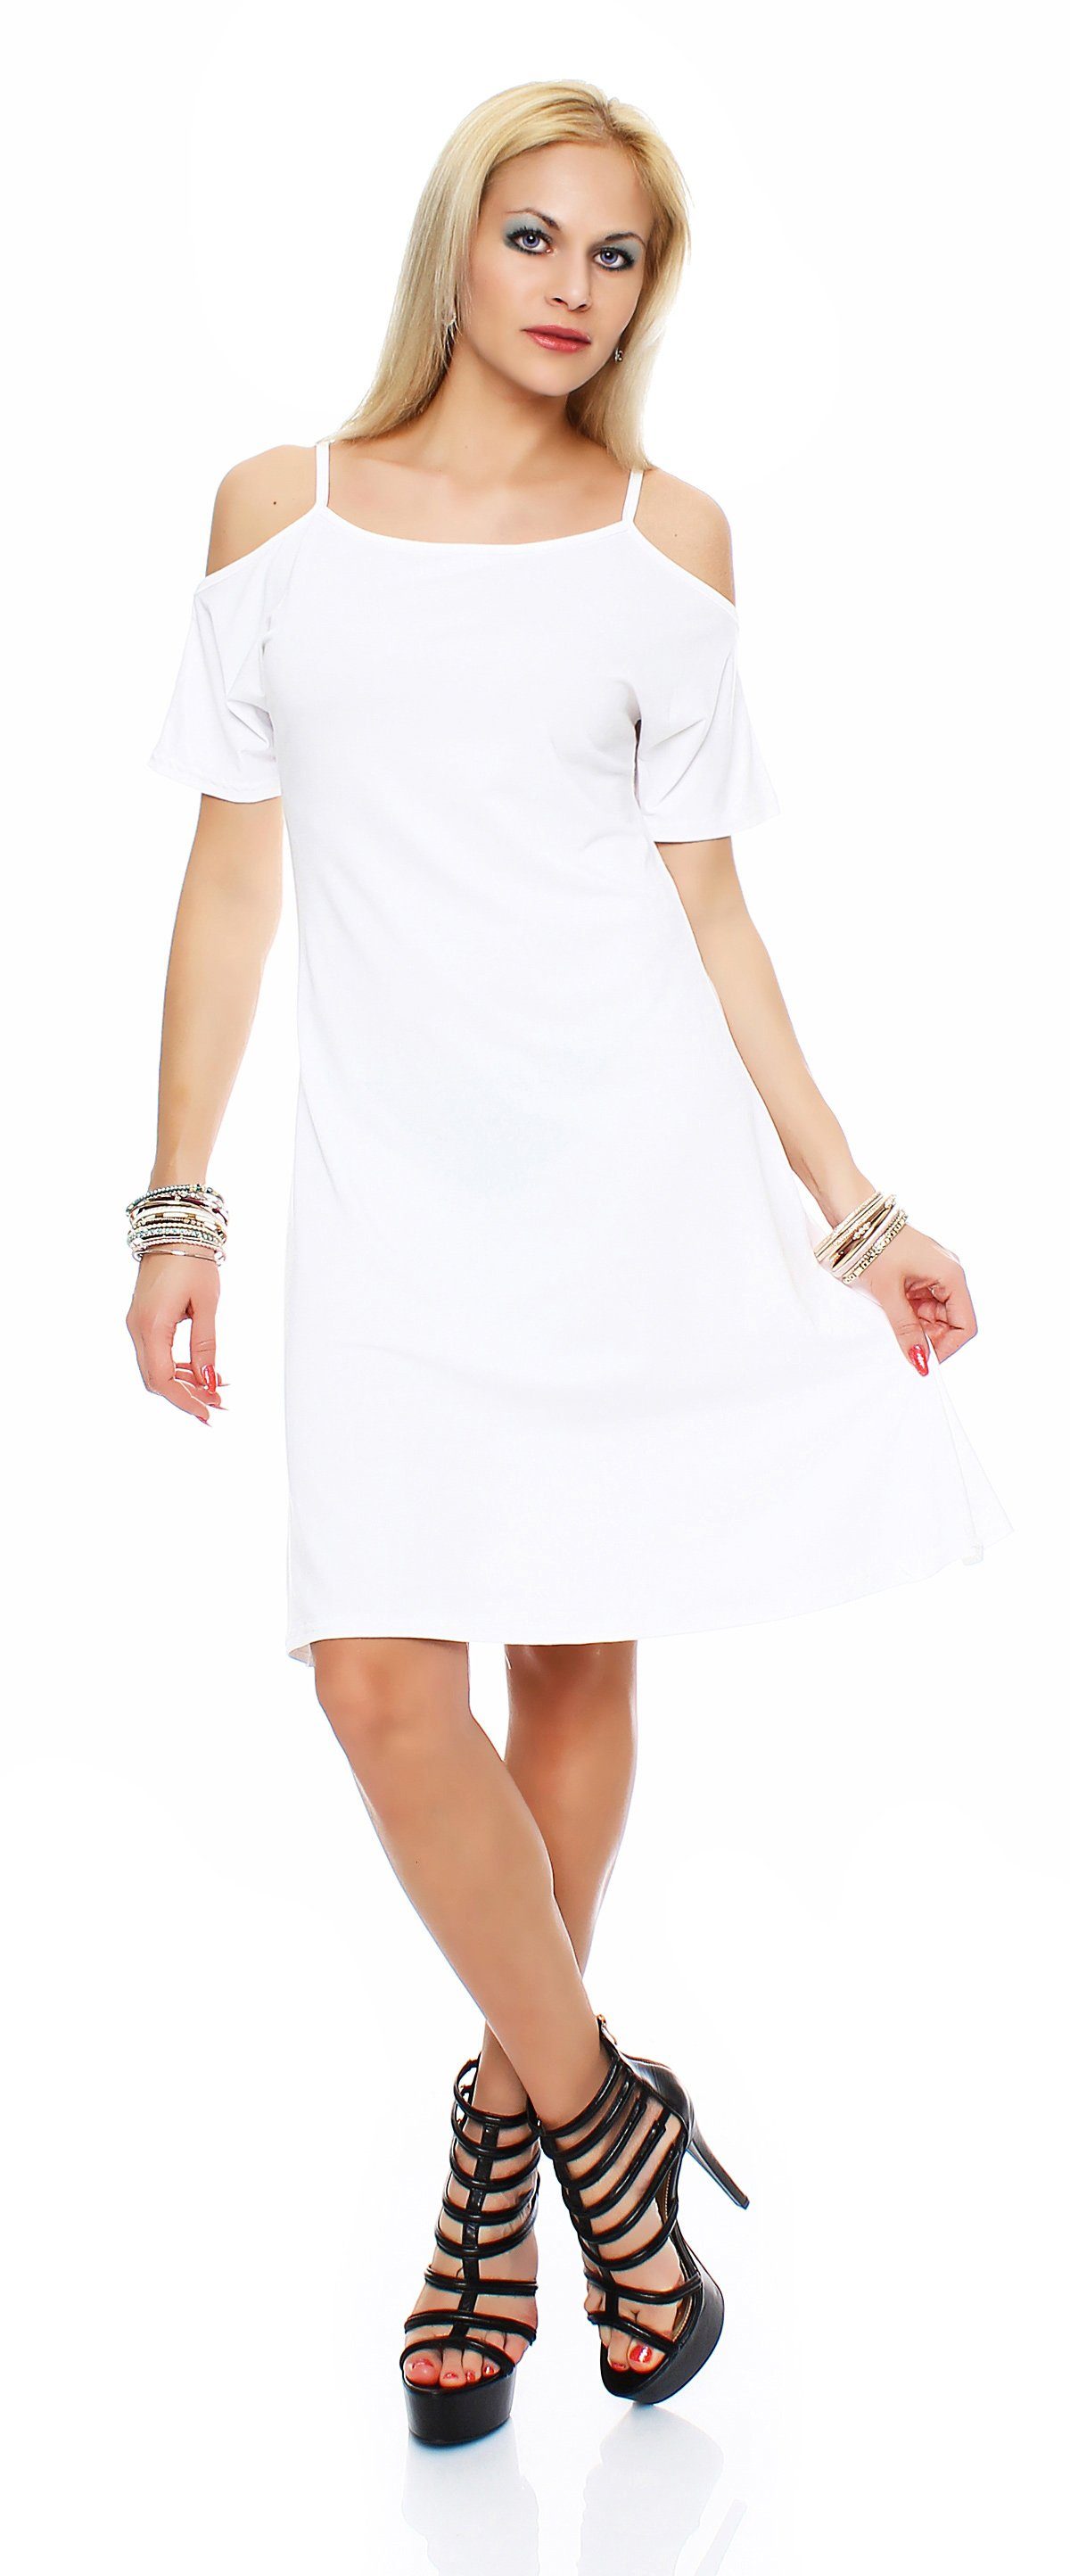 Mississhop Sommerkleid Trägerkleid Kleid mit Träger M.Gaja Weiß-Creme